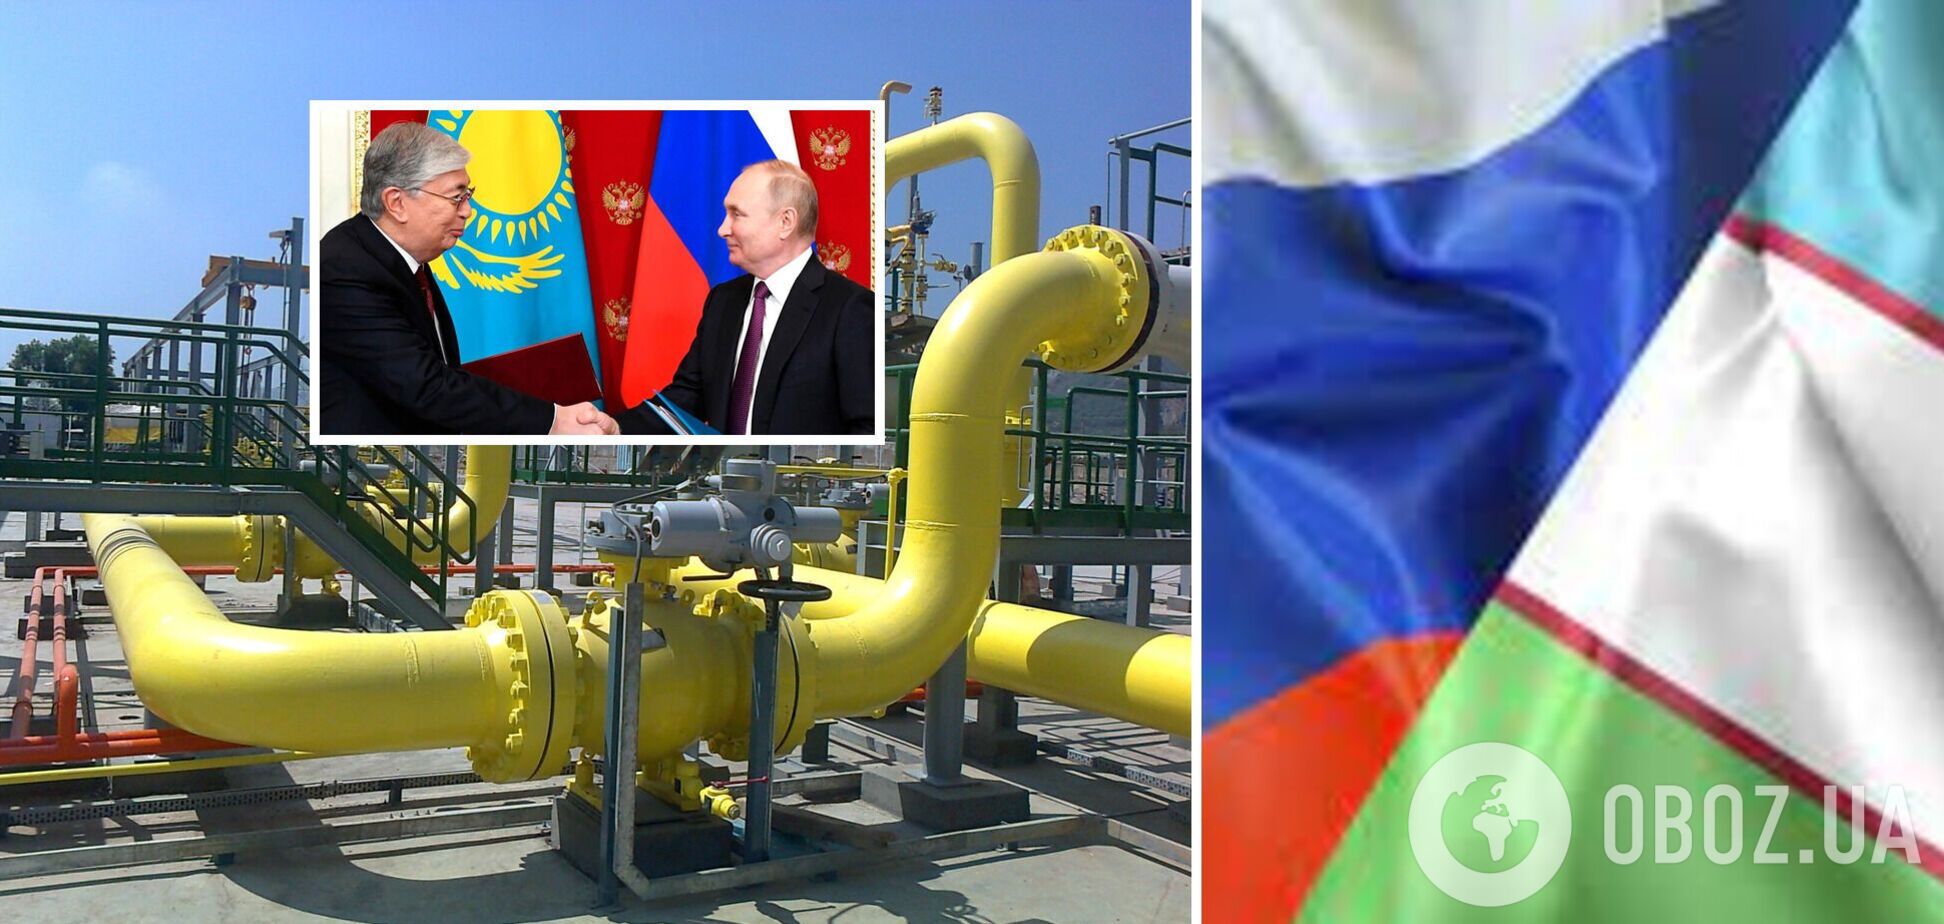 ГТС Узбекистана и Казахстана Россия хотела перевести под свое управление